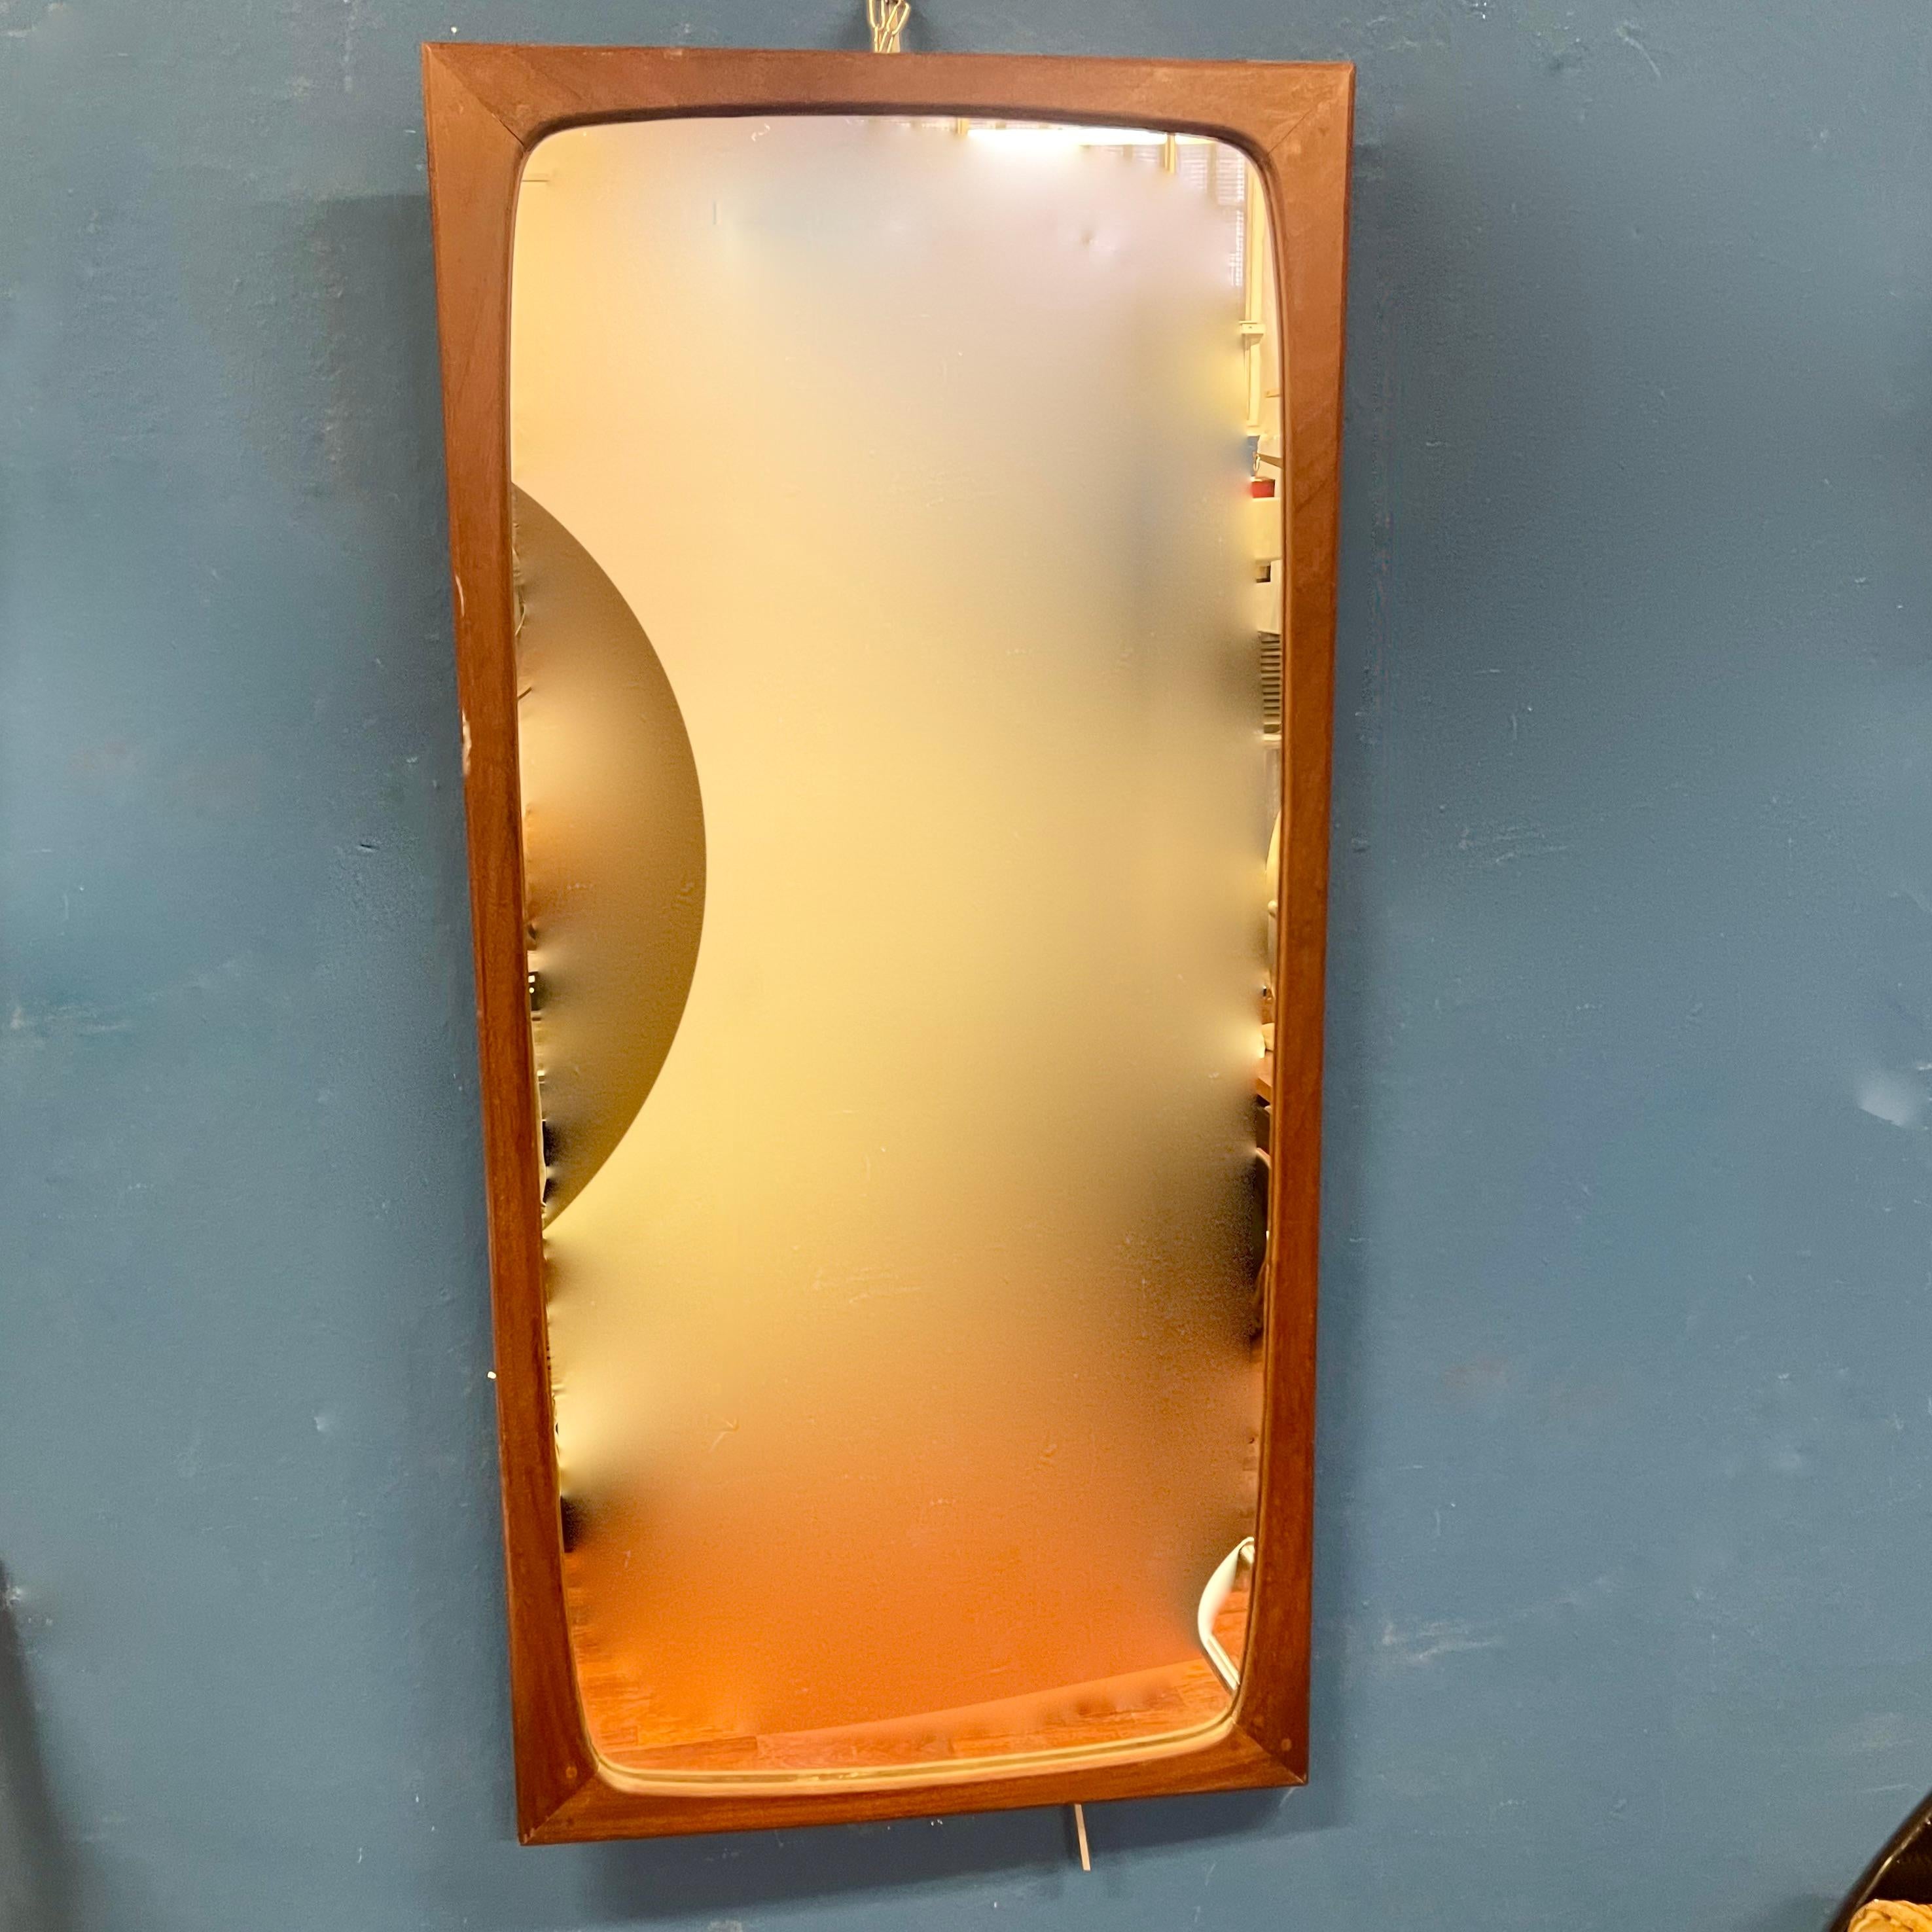 1960er Jahre rechteckiger Spiegel mit Teakholzrahmen, Isa Bergamo Ende der 1960er Jahre.
Beachten Sie das Detail der runden Holzstifte an den Ecken. 
Produktionsetikett auf der Rückseite.